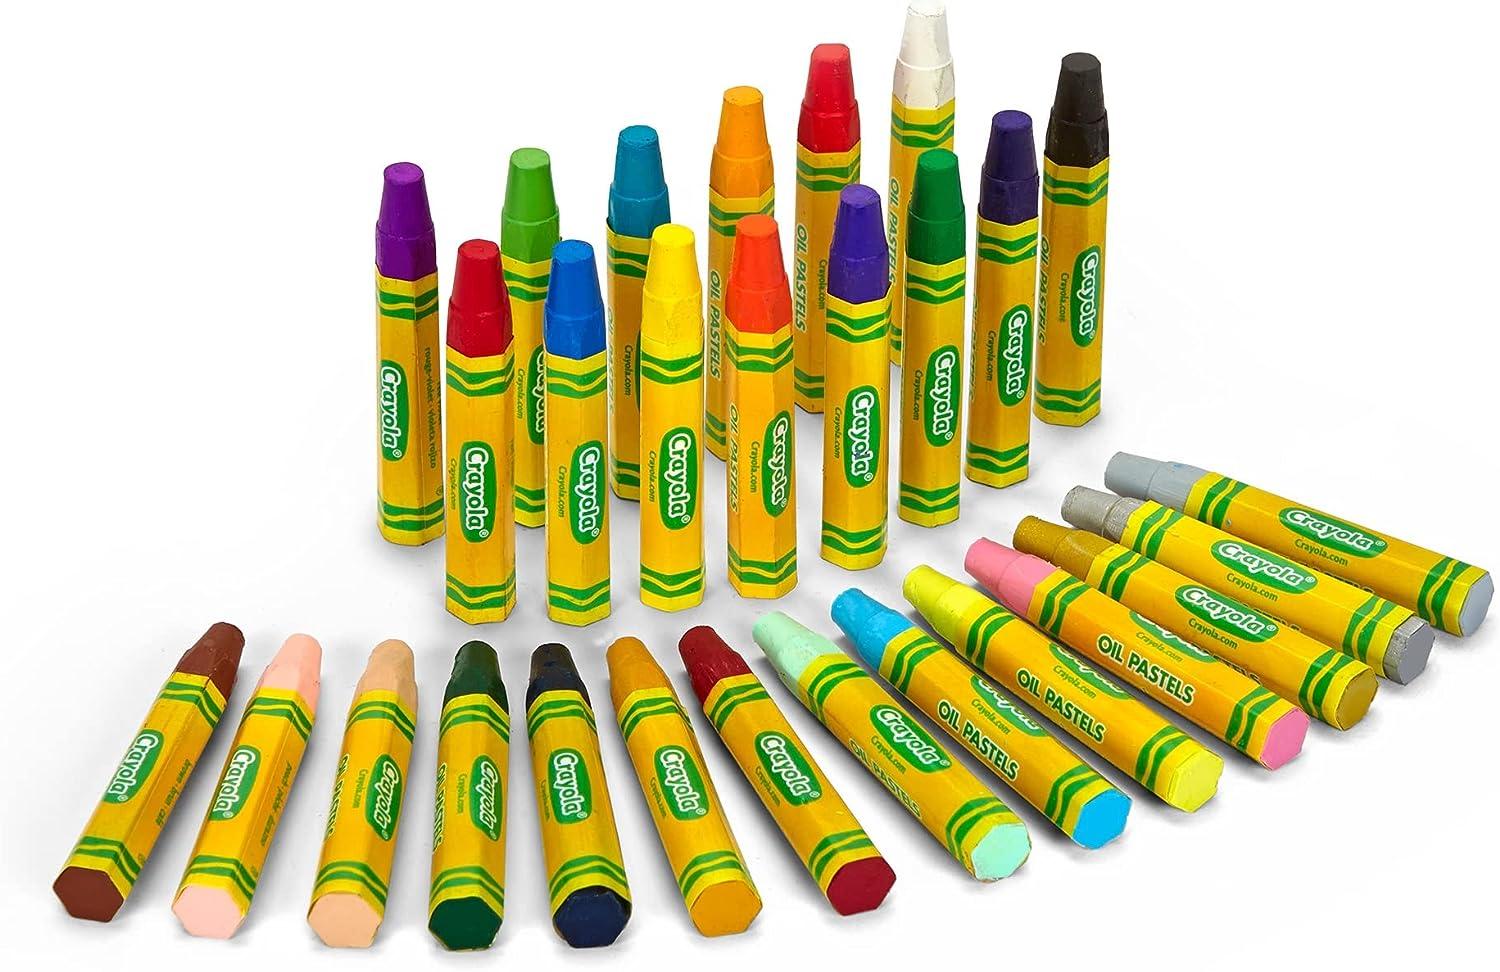 Crayola Oil Pastels, School Supplies, Kids Indoor Activities At Home, 28  Assorted Colors